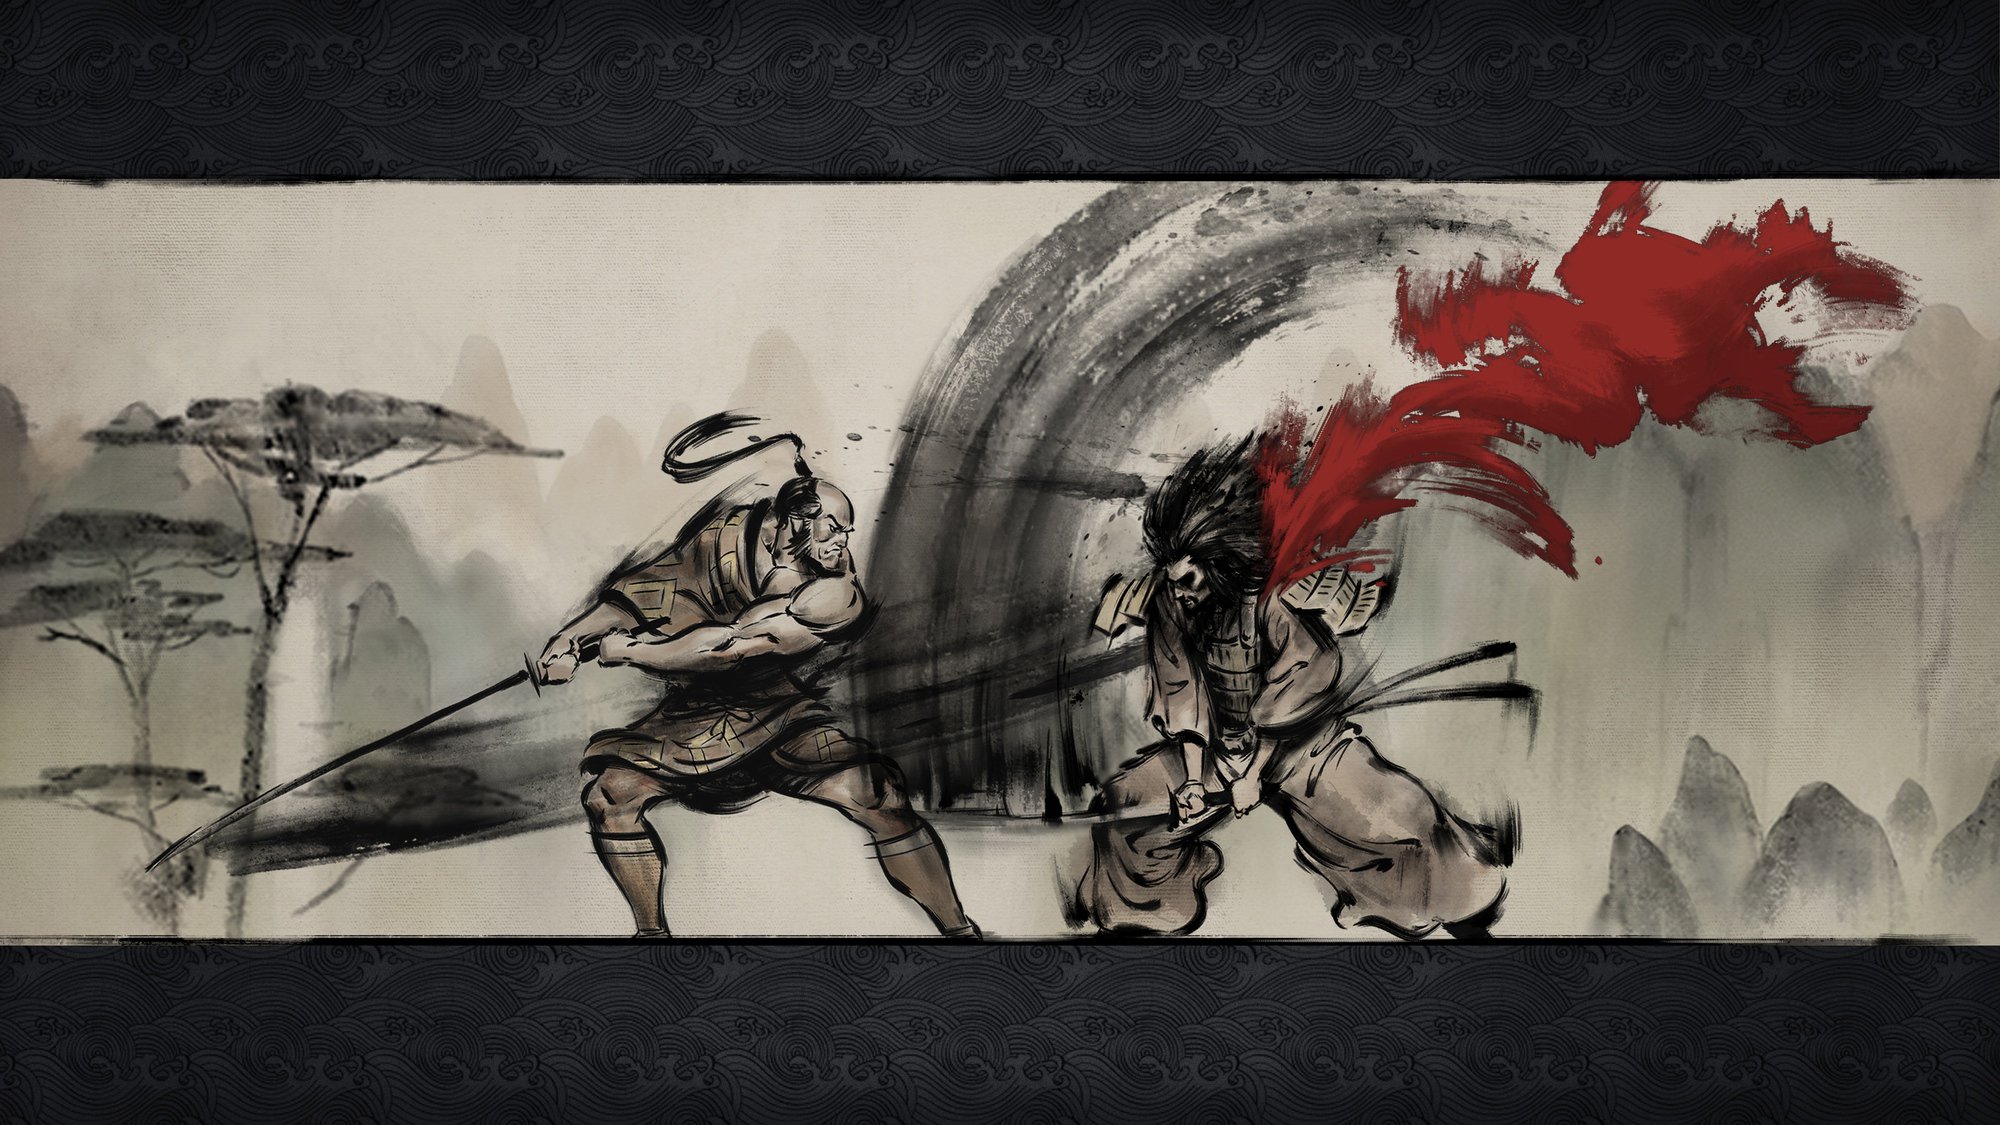 Anunciado Tale of Ronin RPG de samurais PS4, Xbox One y PC